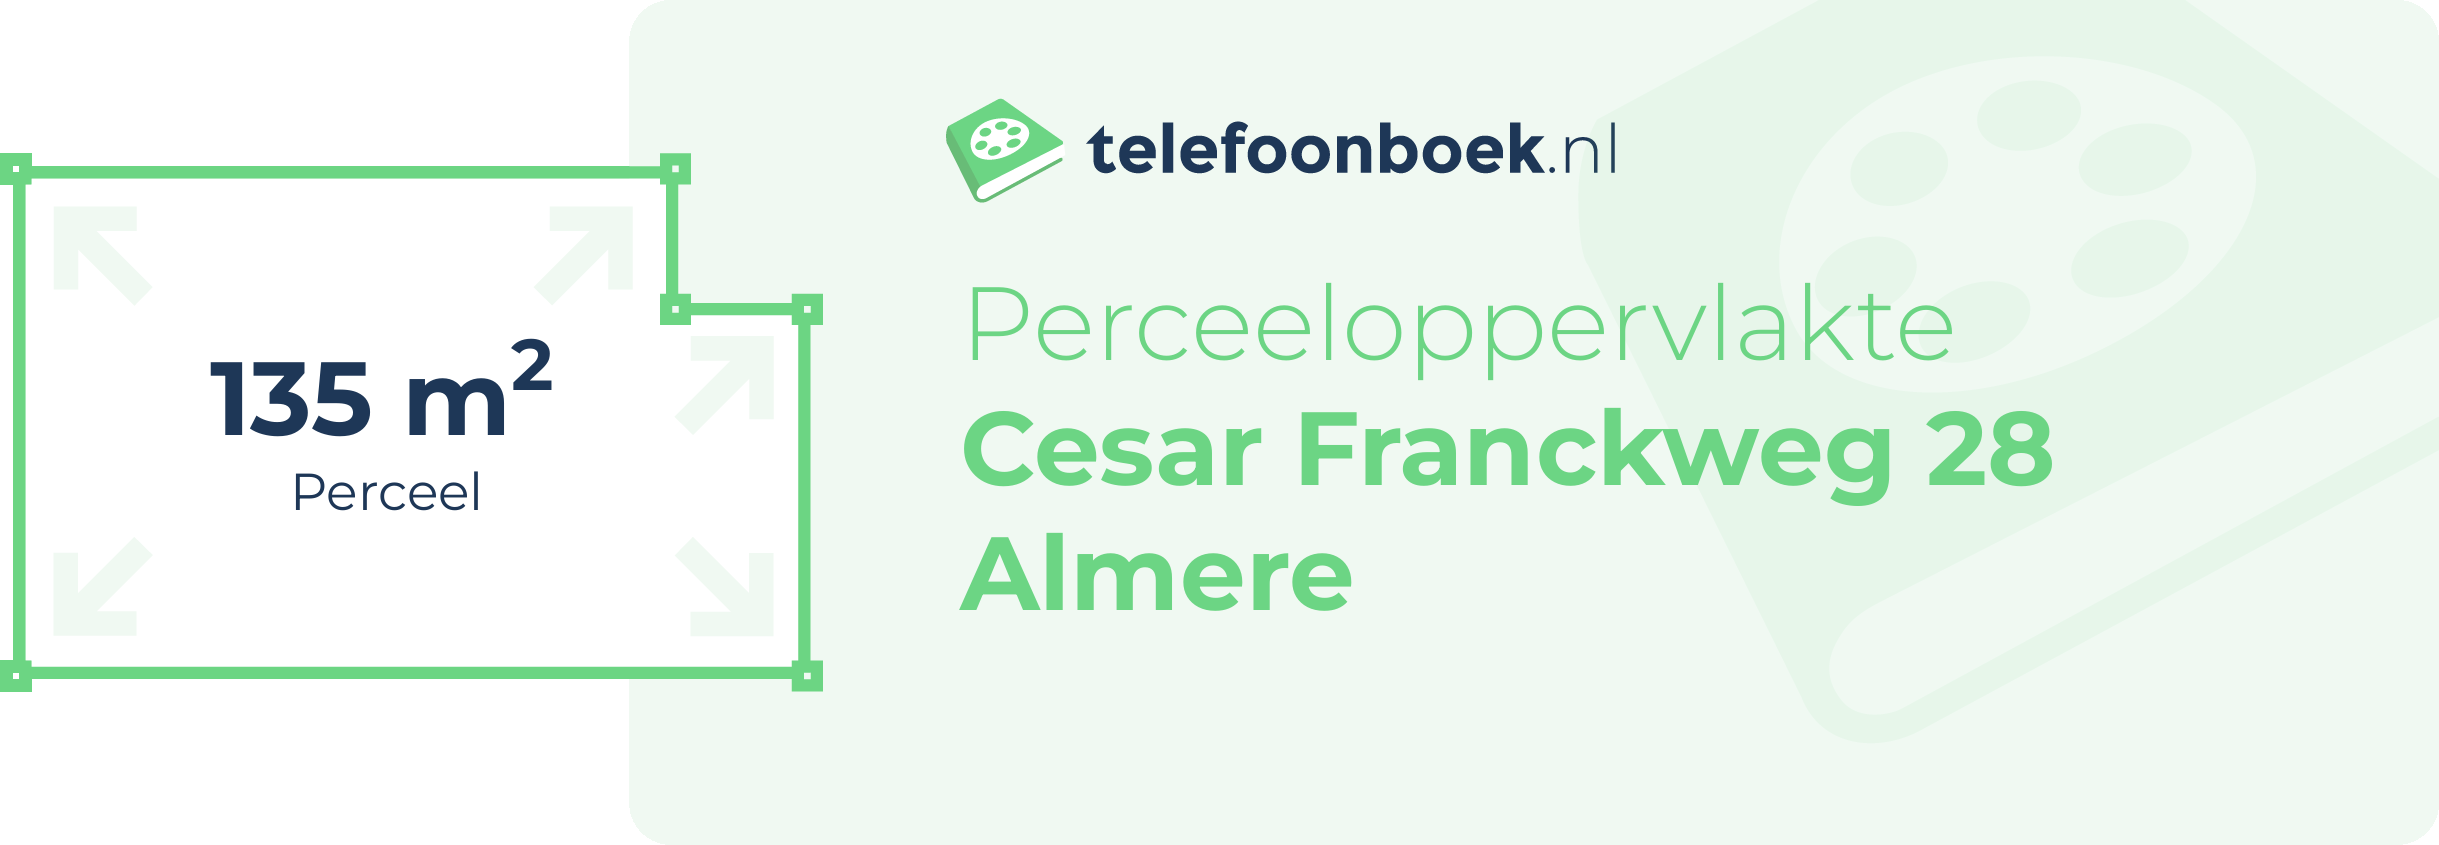 Perceeloppervlakte Cesar Franckweg 28 Almere